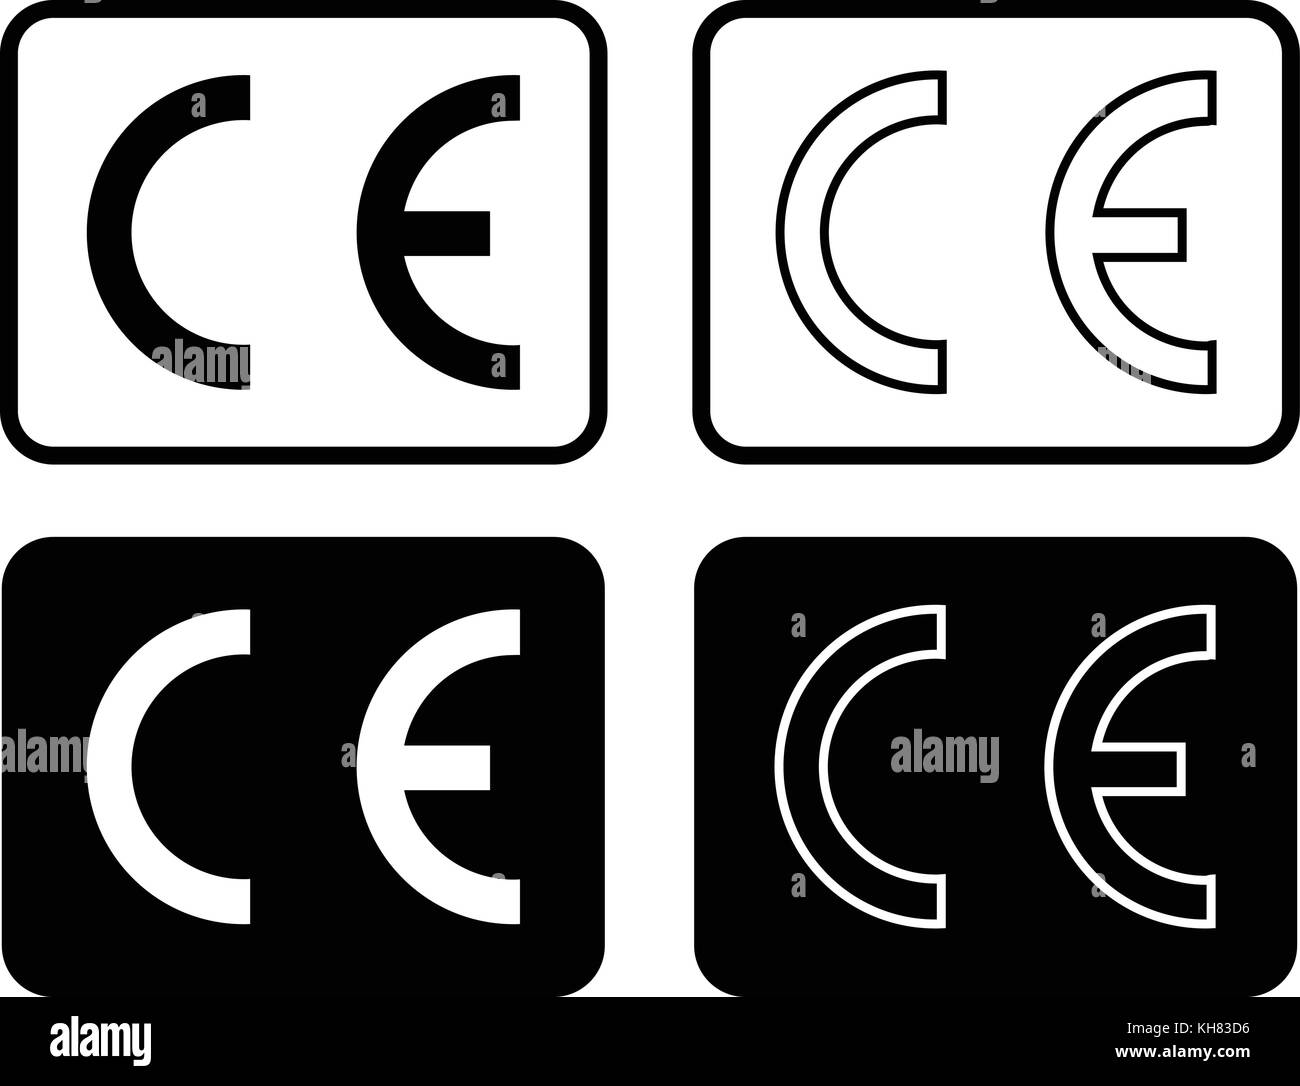 Black isolated CE illustration set, CE mark symbol set, CE mark icons, vector illustration. Stock Vector